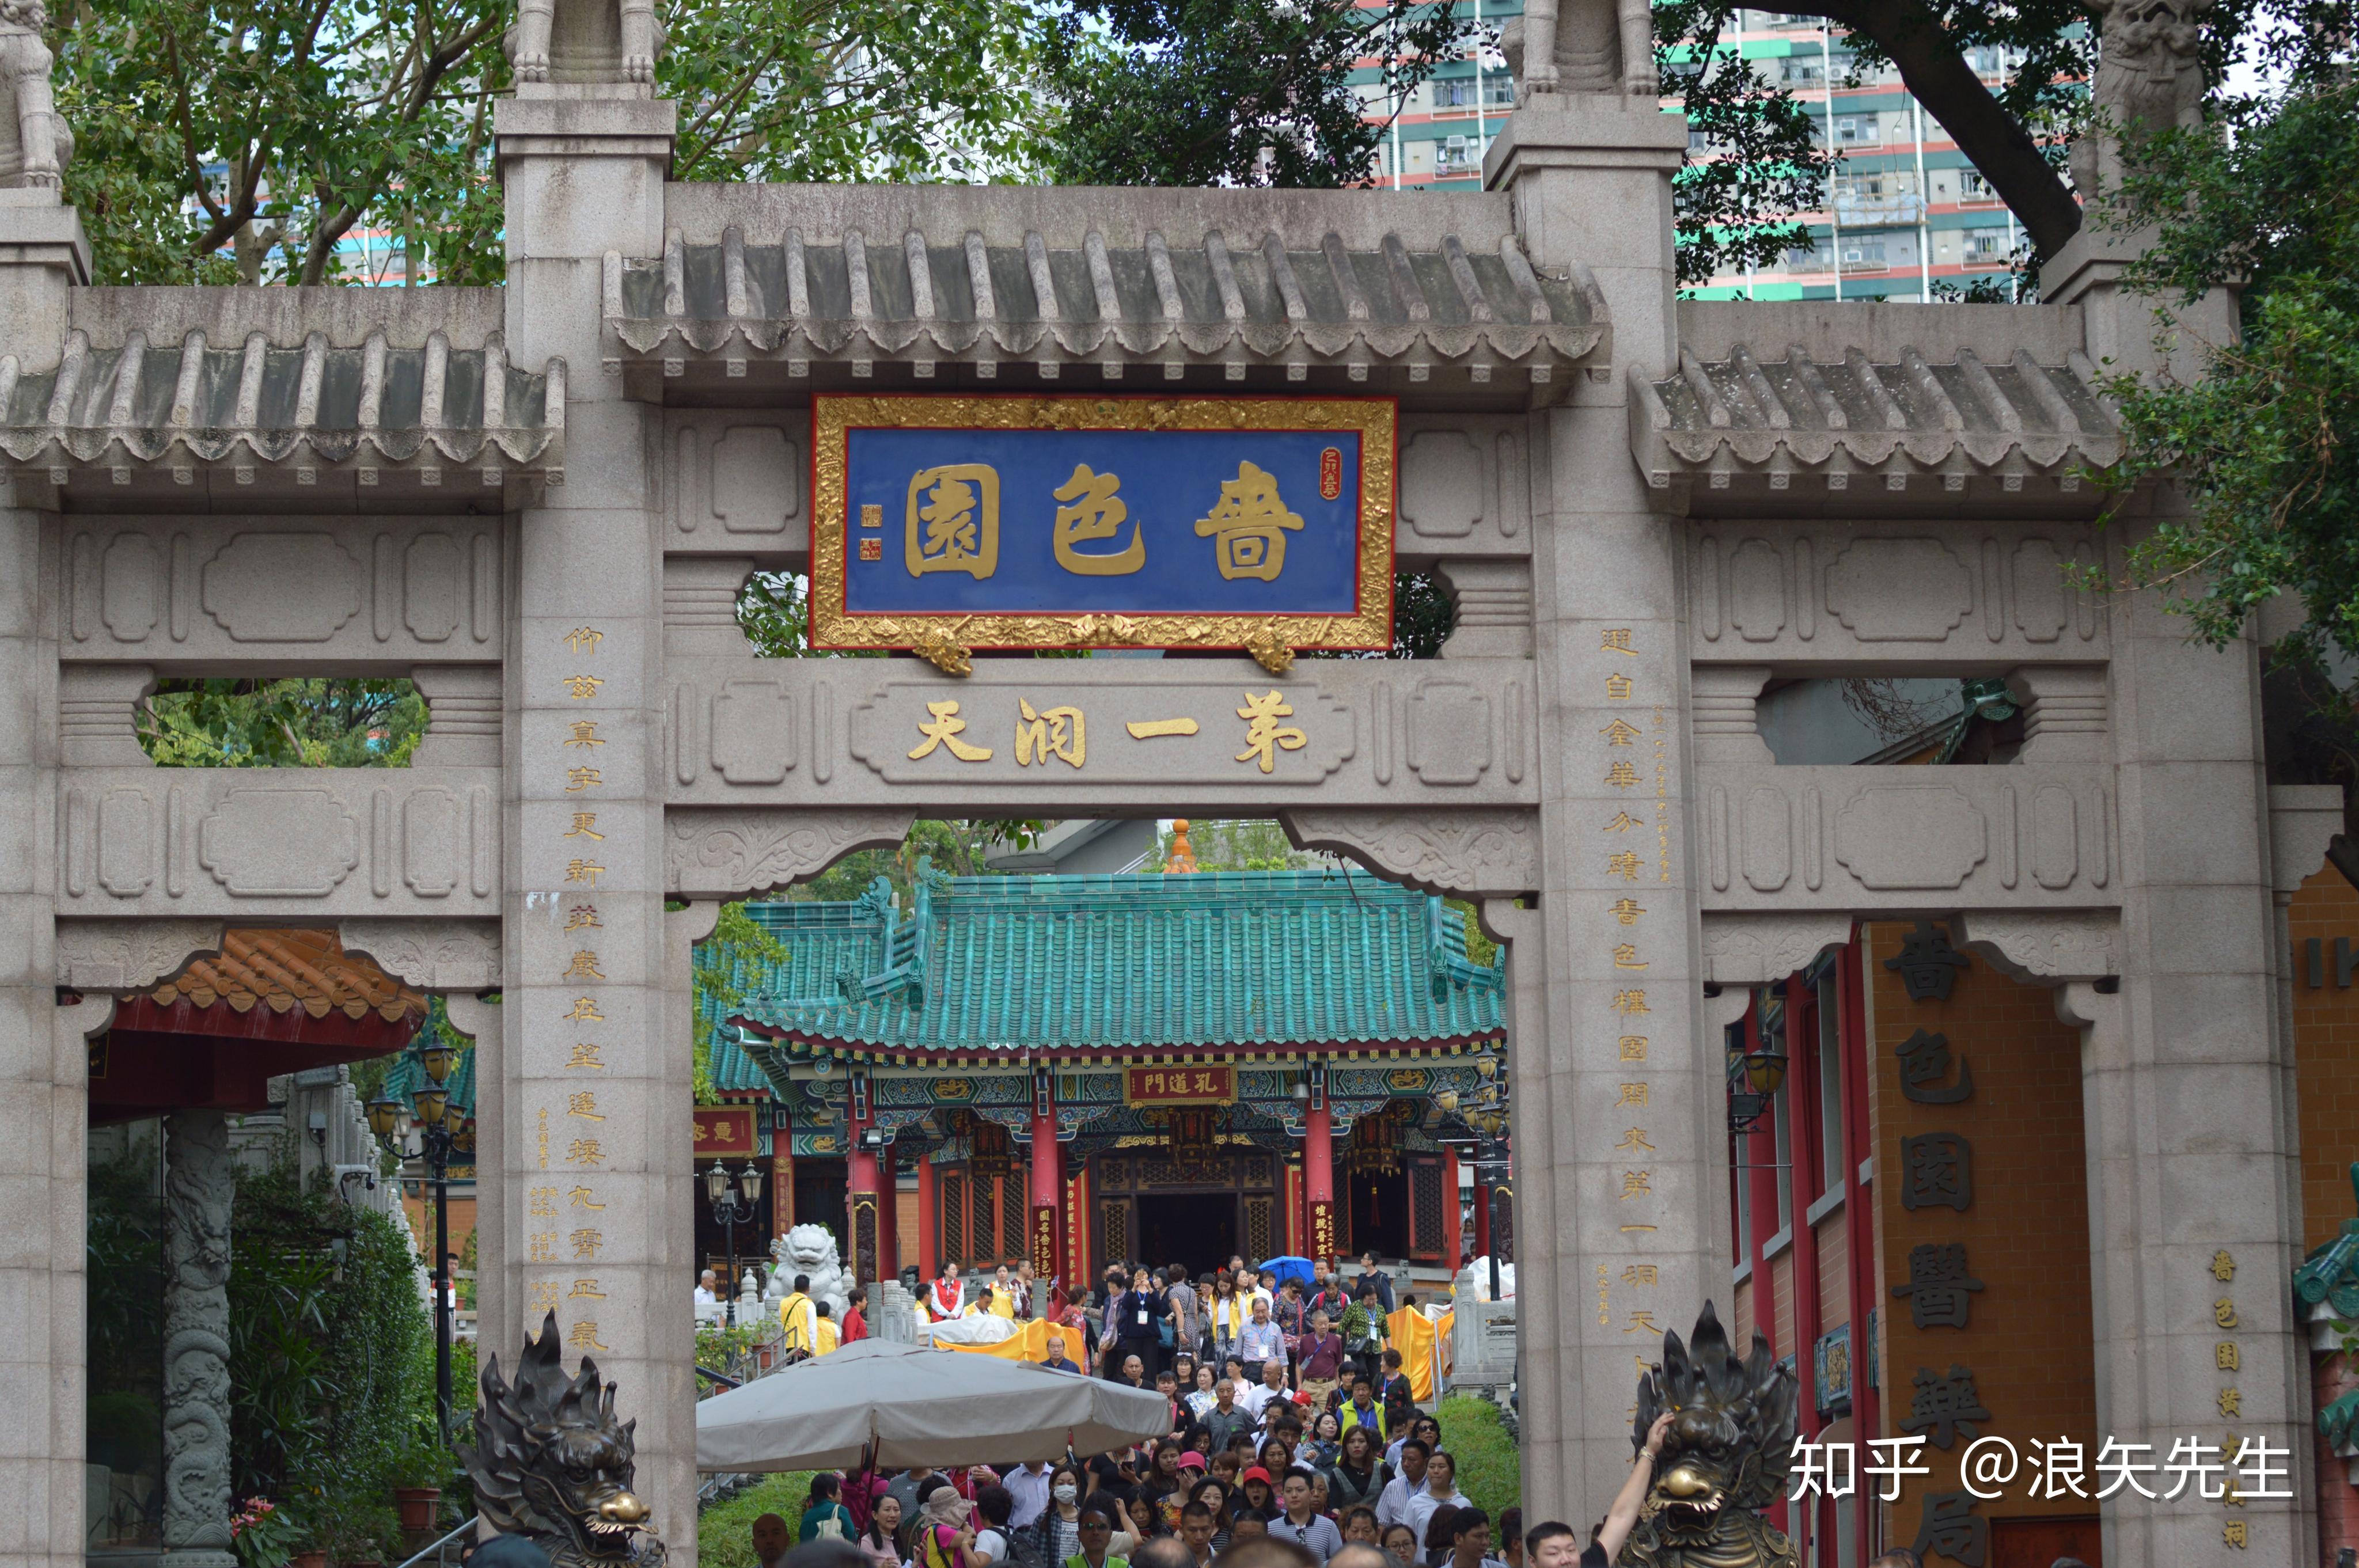 黄大仙MTR驻地的标志在香港 库存图片. 图片 包括有 符号, 中国, 汉语, 前面, 印刷术, 香港, 墙壁 - 63026309